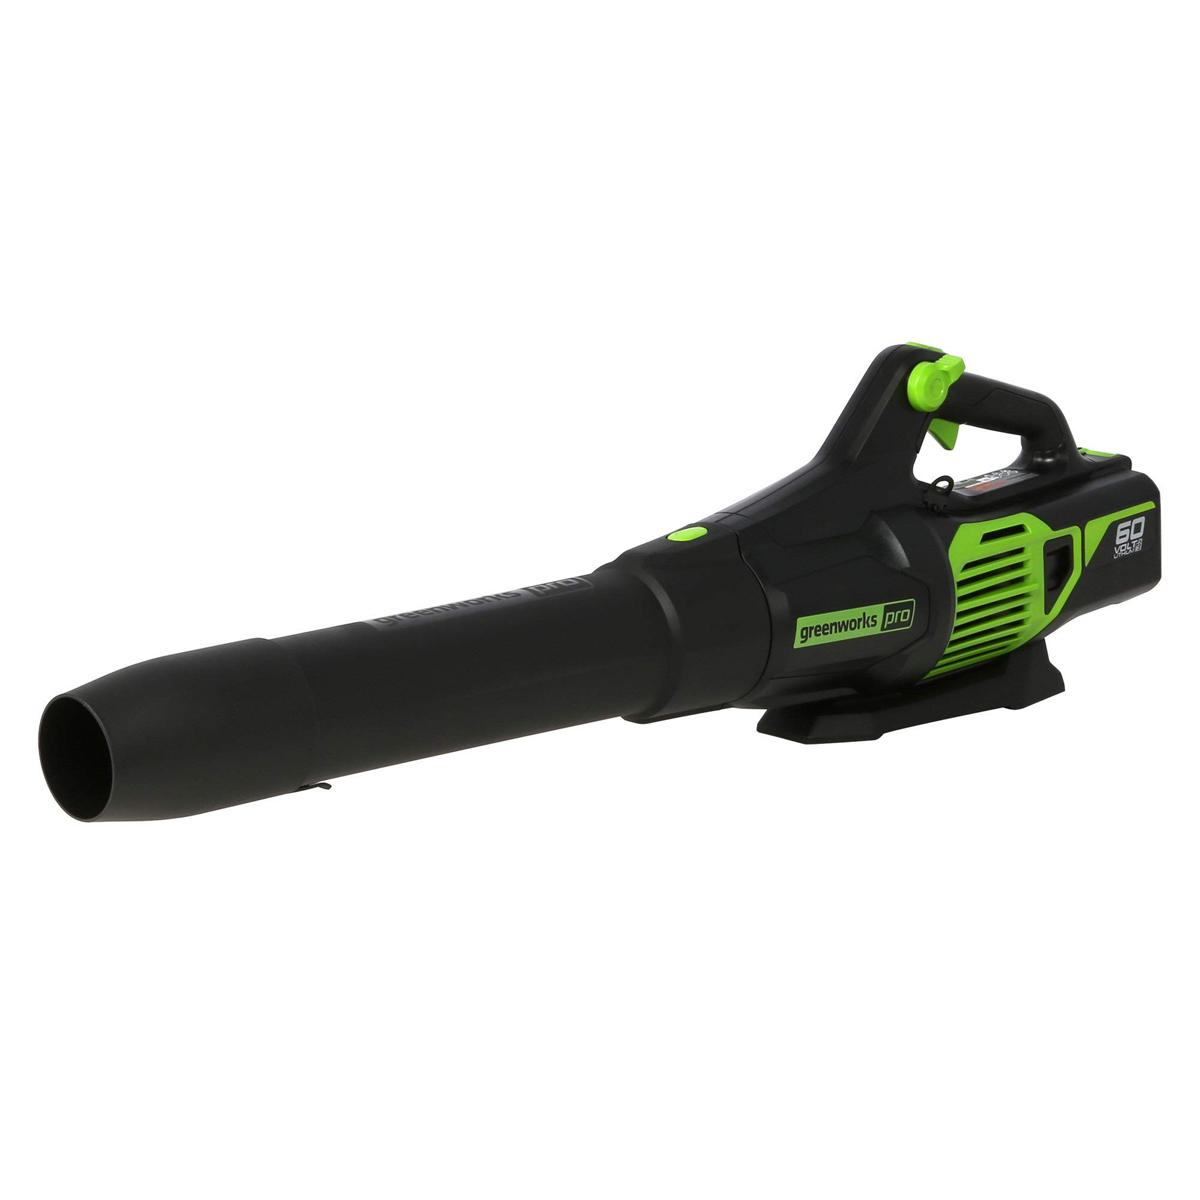 Greenworks PRO 60V 610 CFM Cordless Handheld Leaf Blower for $39.50